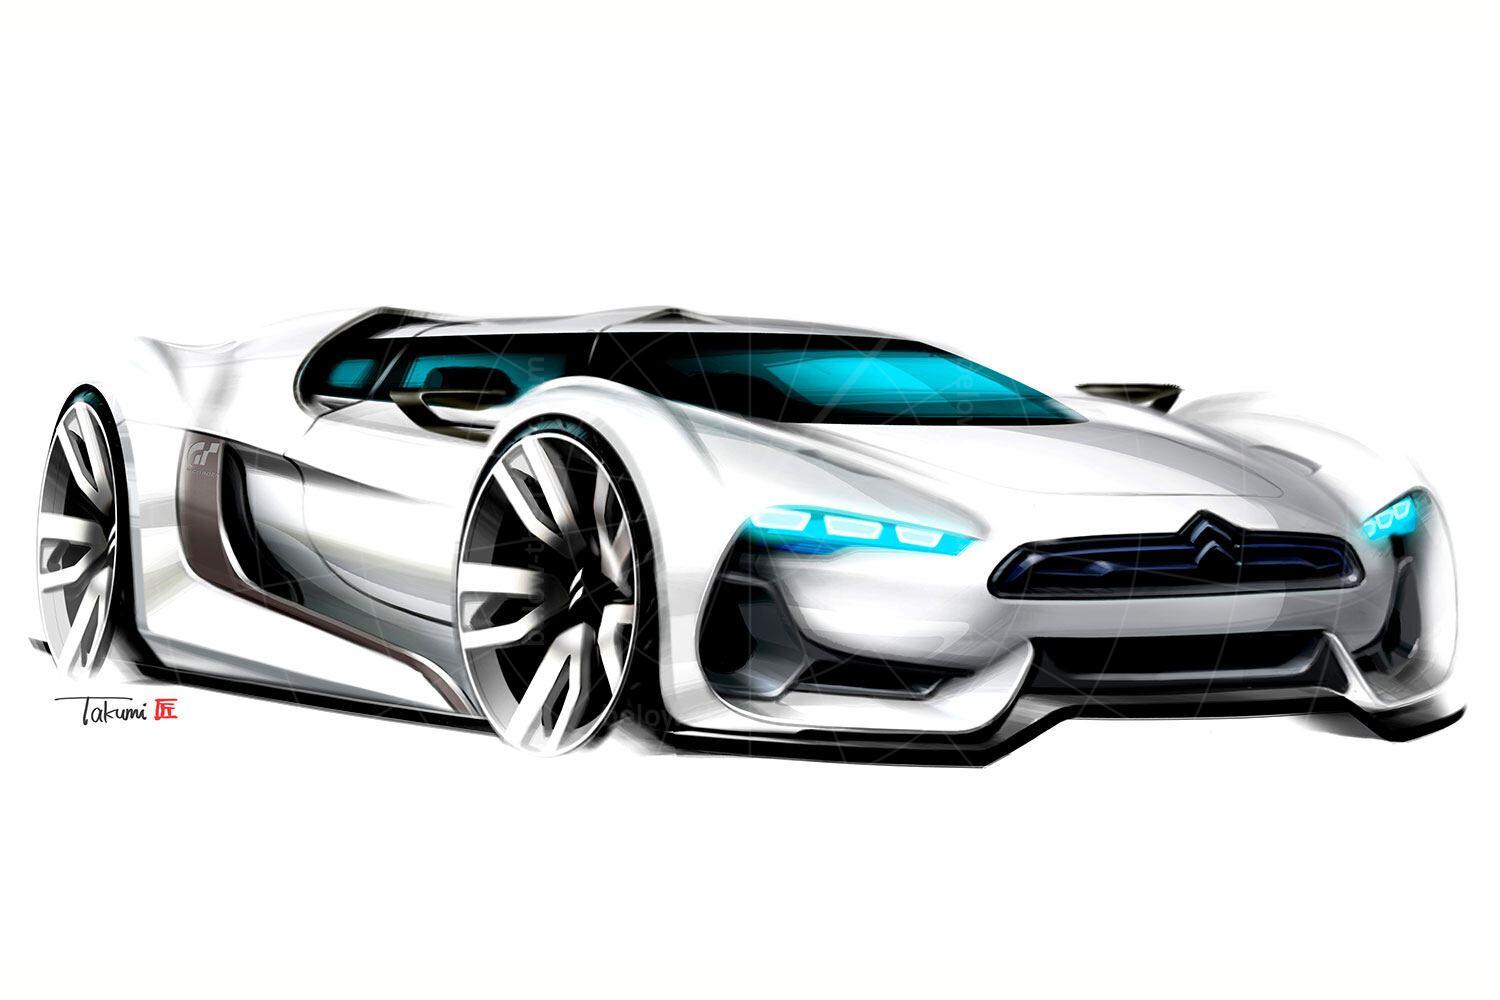 Citroen GT concept sketch Pic: Citroen | Citroen GT concept sketch